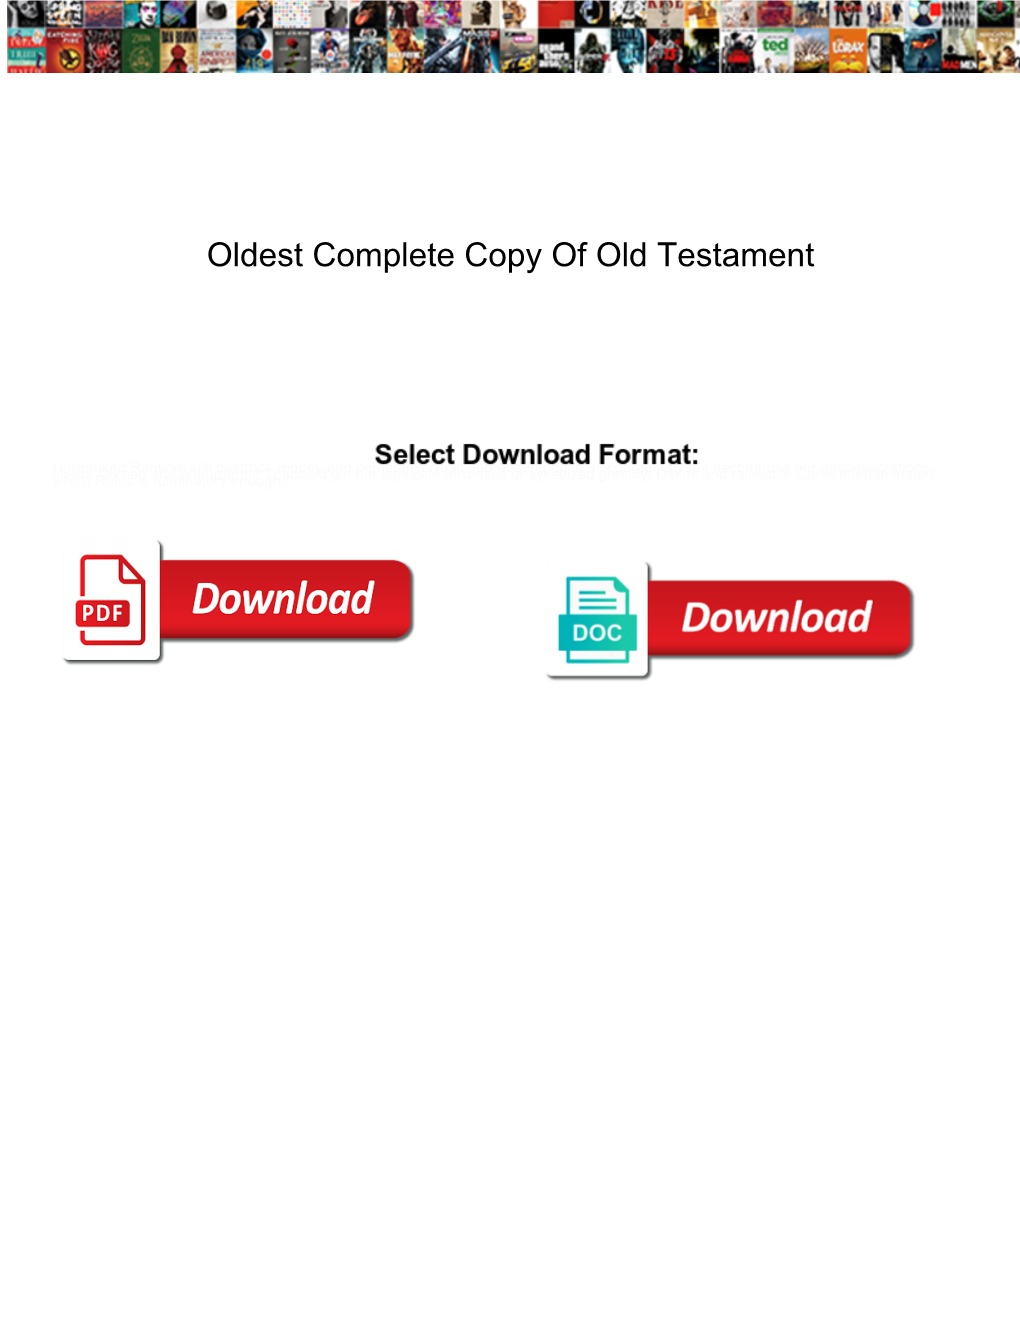 Oldest Complete Copy of Old Testament